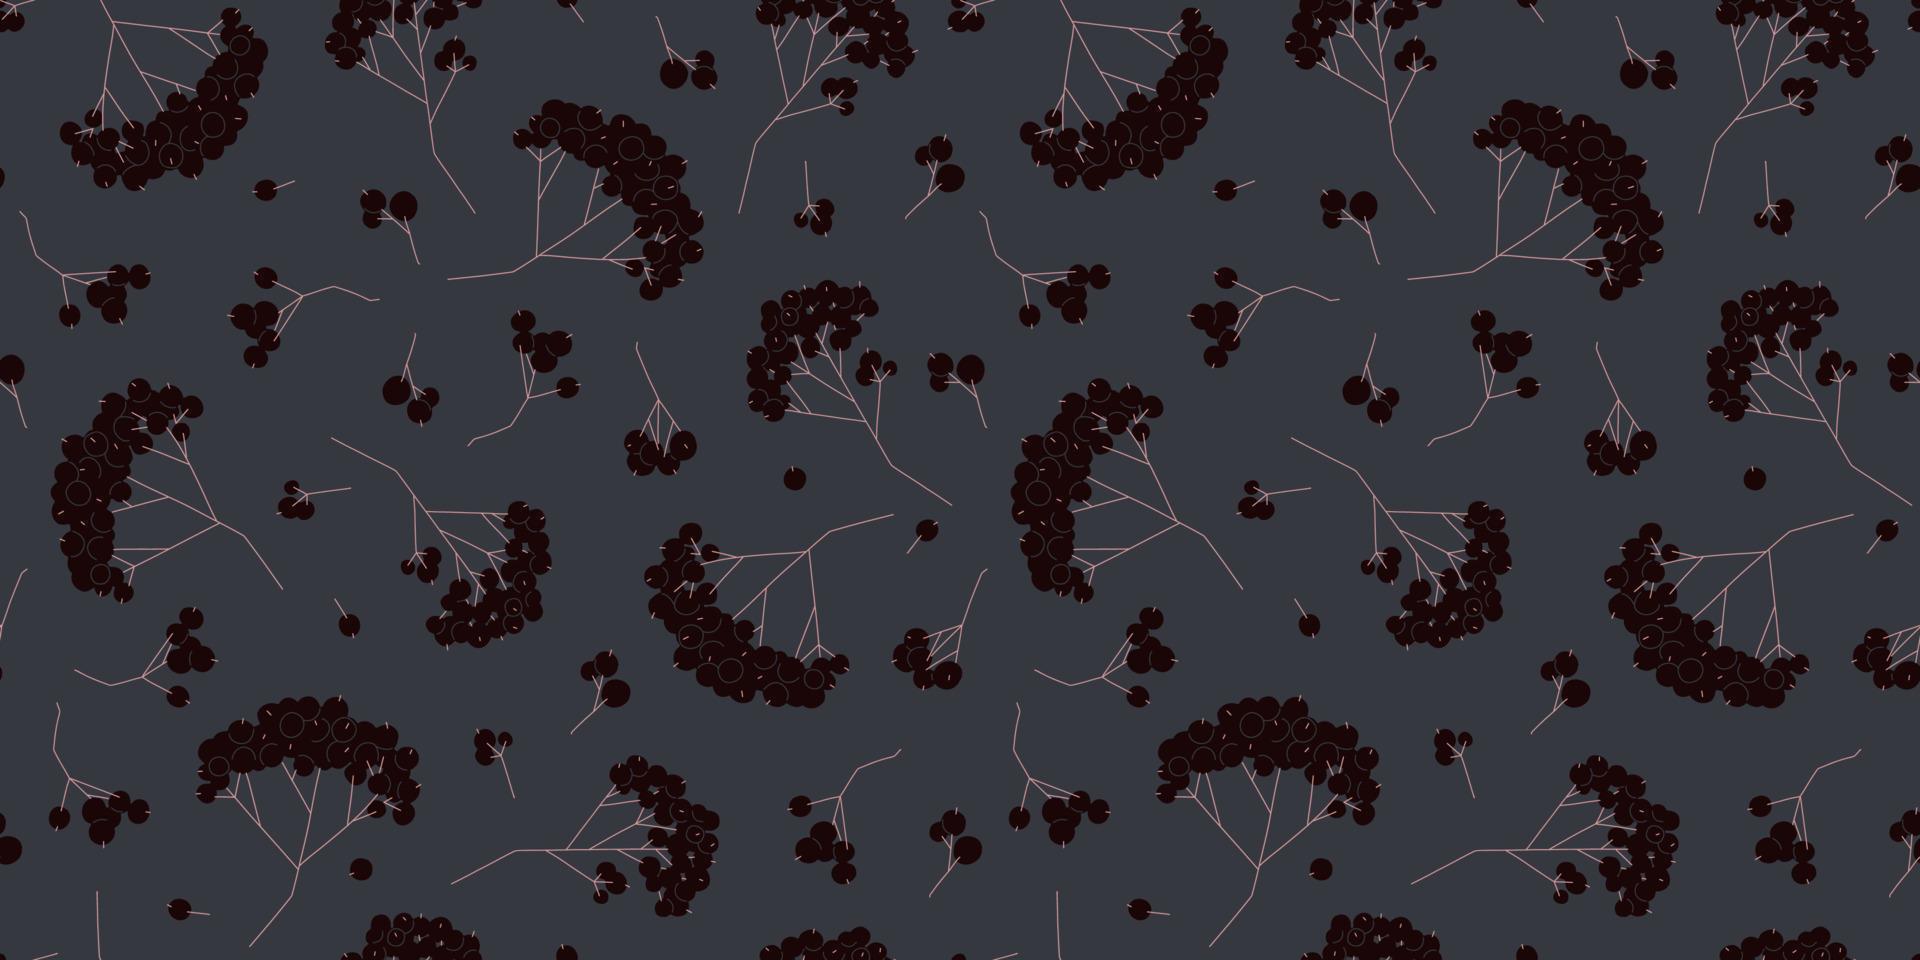 zwart lijsterbes bessen donker naadloos patroon. vector bloemen seizoensgebonden achtergrond voor stoffen, oppervlakken, boek dekt, behang, grafiek, afdrukken, hobby's, uitnodigingen.